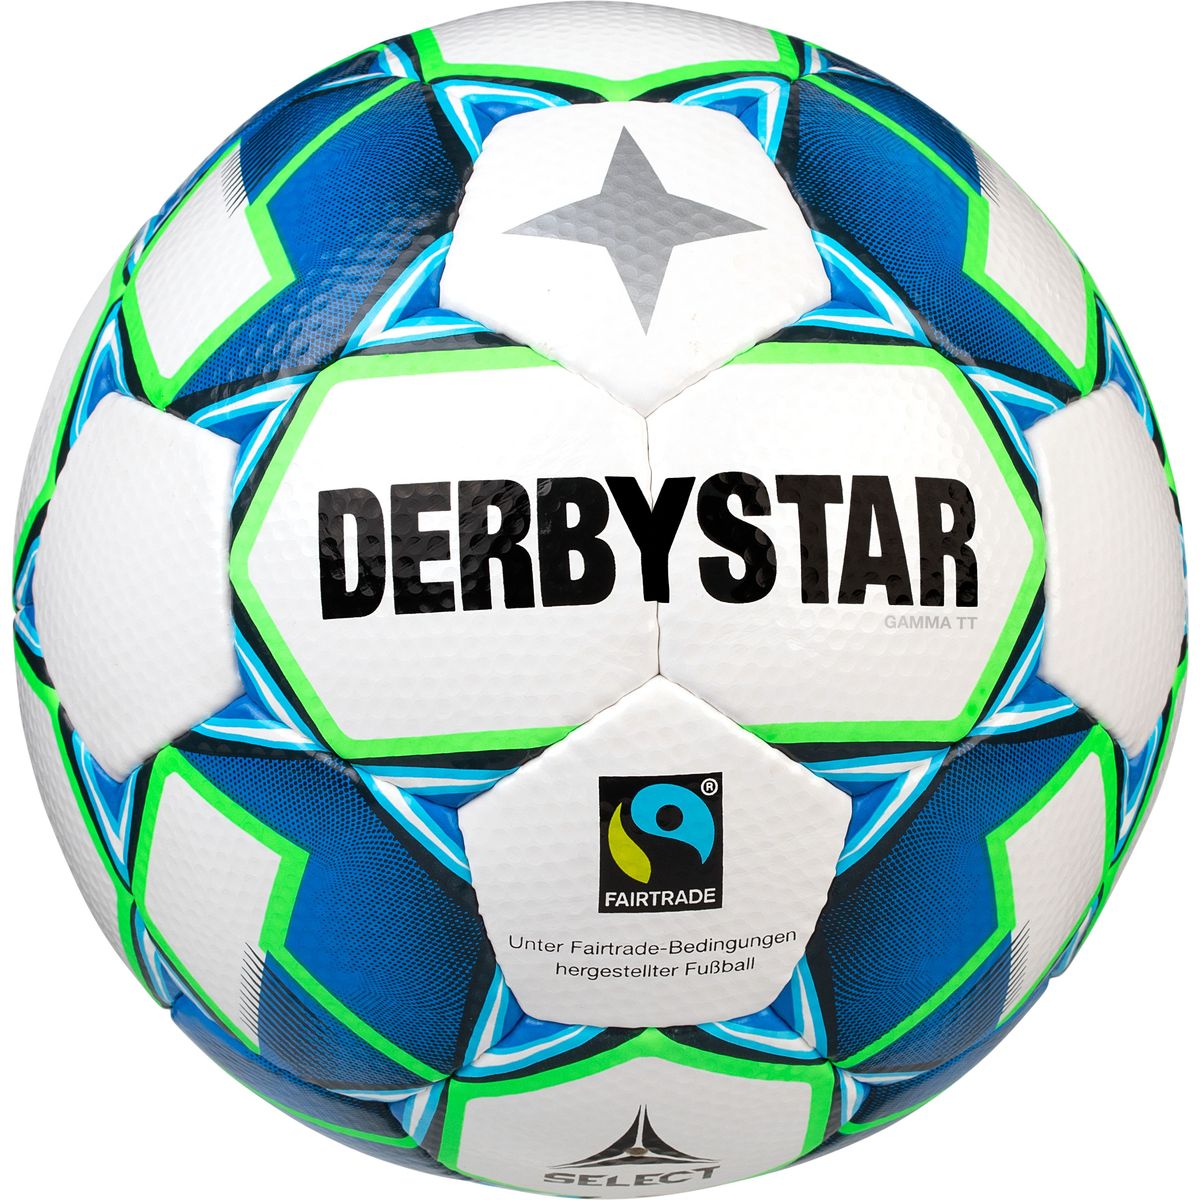 Derbystar Gamma TT Outdoor-Fußball